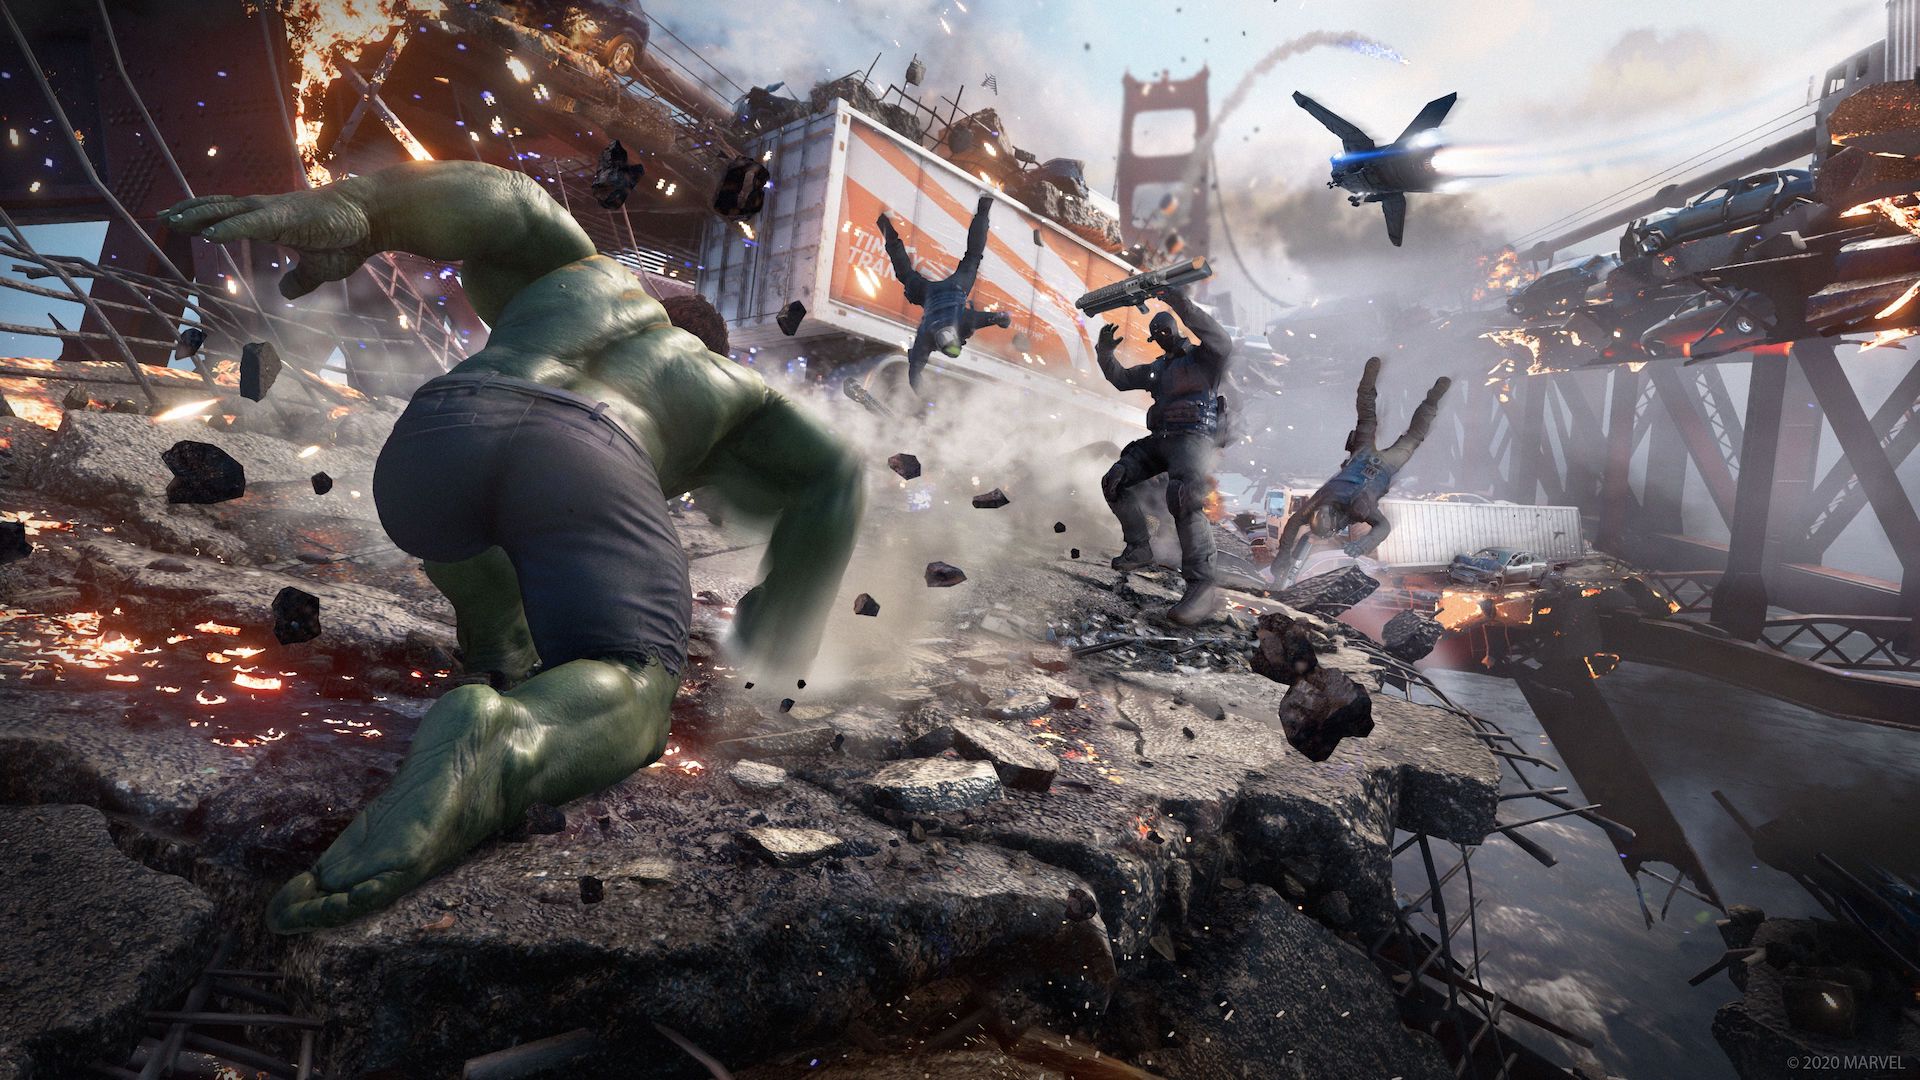 Marvels Avengers Bild 3